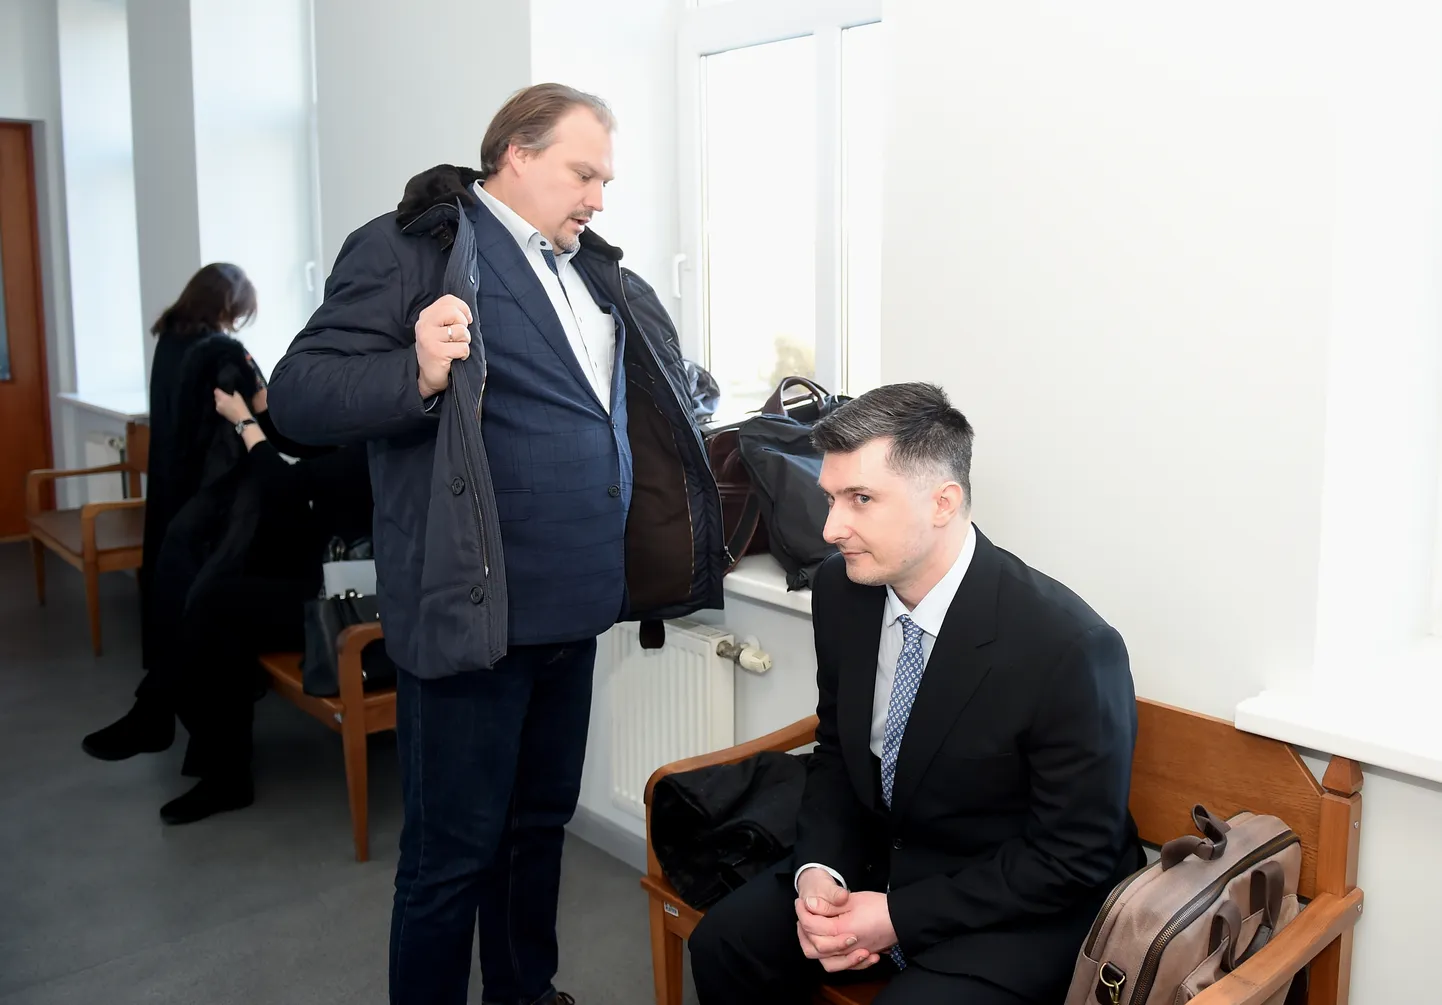 Advokāts Artūrs Zvejsalnieks (no kreisās) un apsūdzētais Romāns Siņicins pirms tiesas sēdes Rīgas apgabaltiesā, kur izskatīs krimināllietu, kurā viņš apsūdzēts par pusaudža vecumā 1994.gadā pastrādātām veikalu apzagšanām.